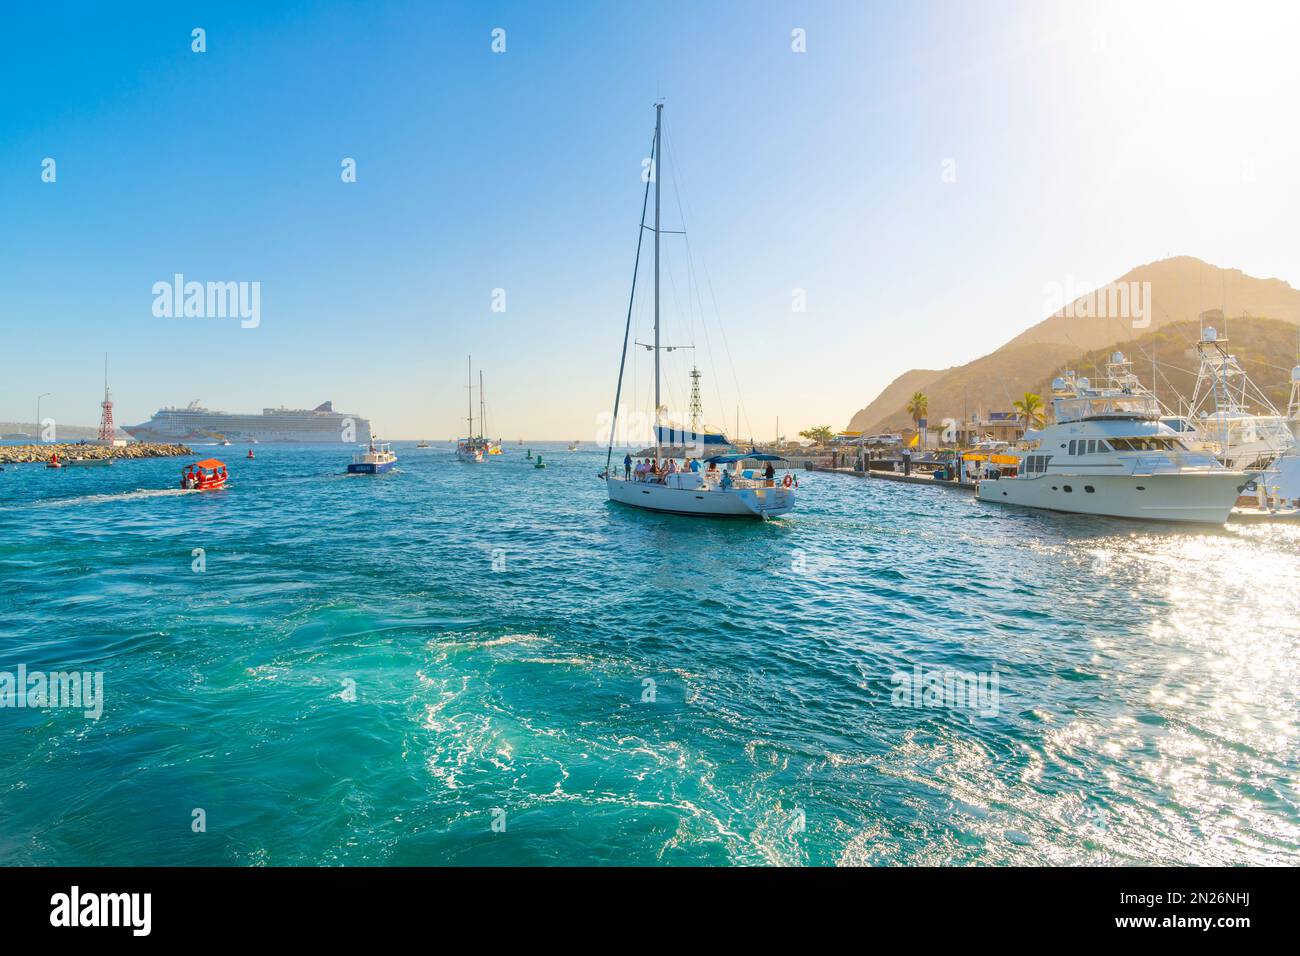 Des bateaux de pêche, des yachts et des voiliers partent en mer avec un grand bateau de croisière en vue au port de Cabos San Lucas, au Mexique, le long de la Riviera mexicaine. Banque D'Images